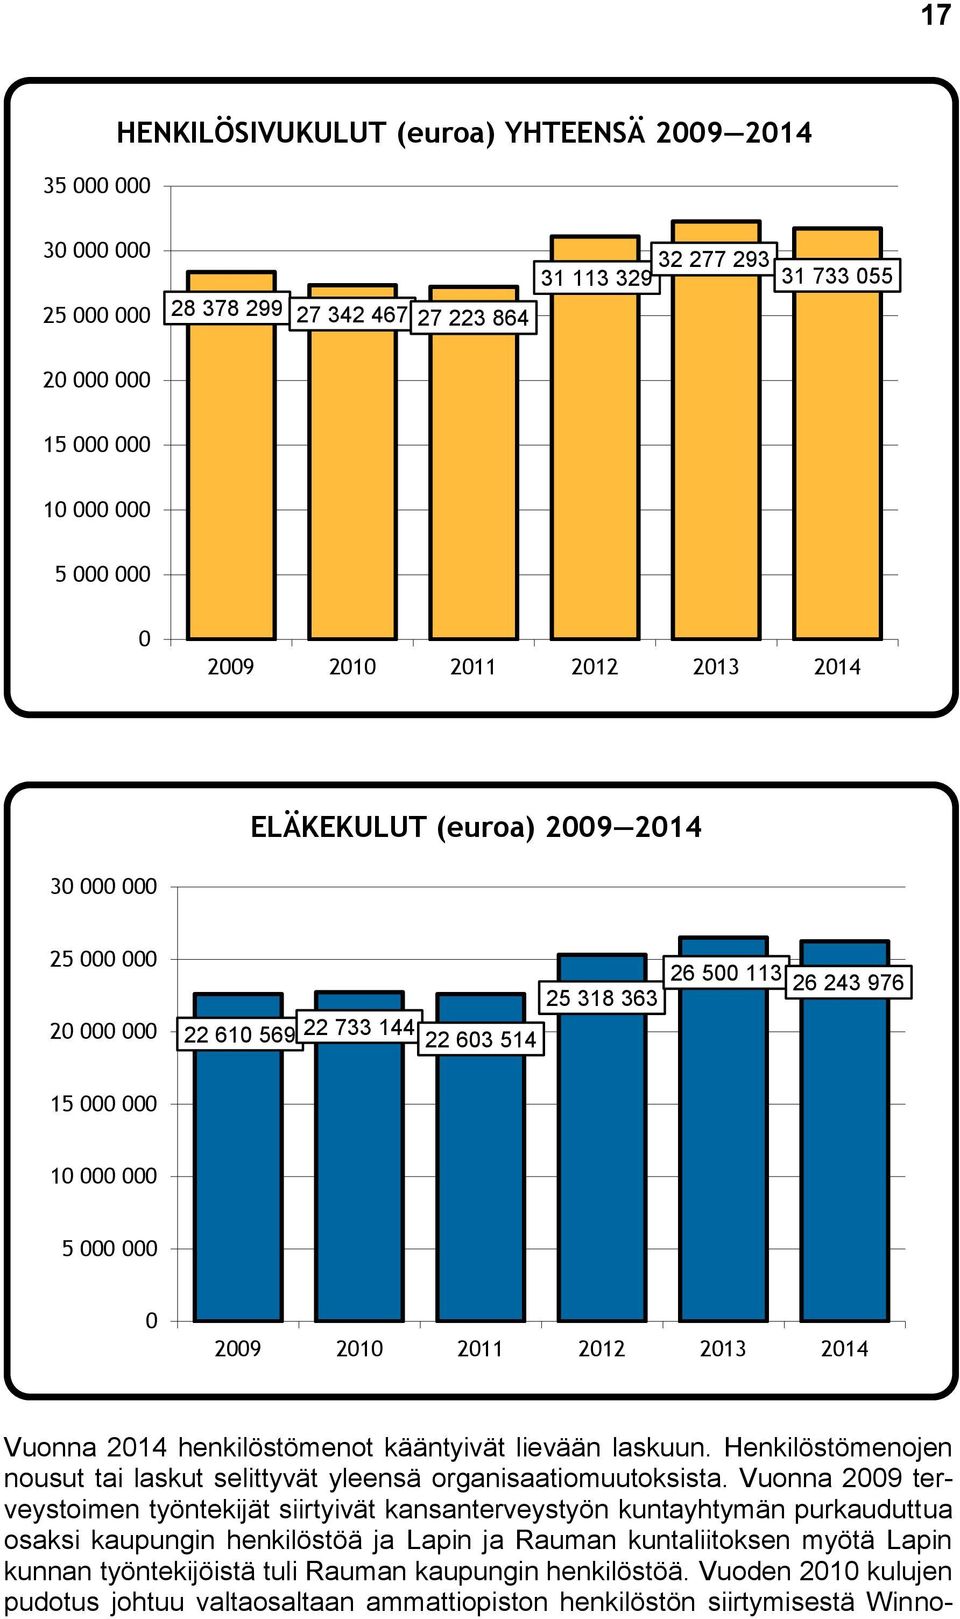 2011 2012 2013 2014 Vuonna 2014 henkilöstömenot kääntyivät lievään laskuun. Henkilöstömenojen nousut tai laskut selittyvät yleensä organisaatiomuutoksista.